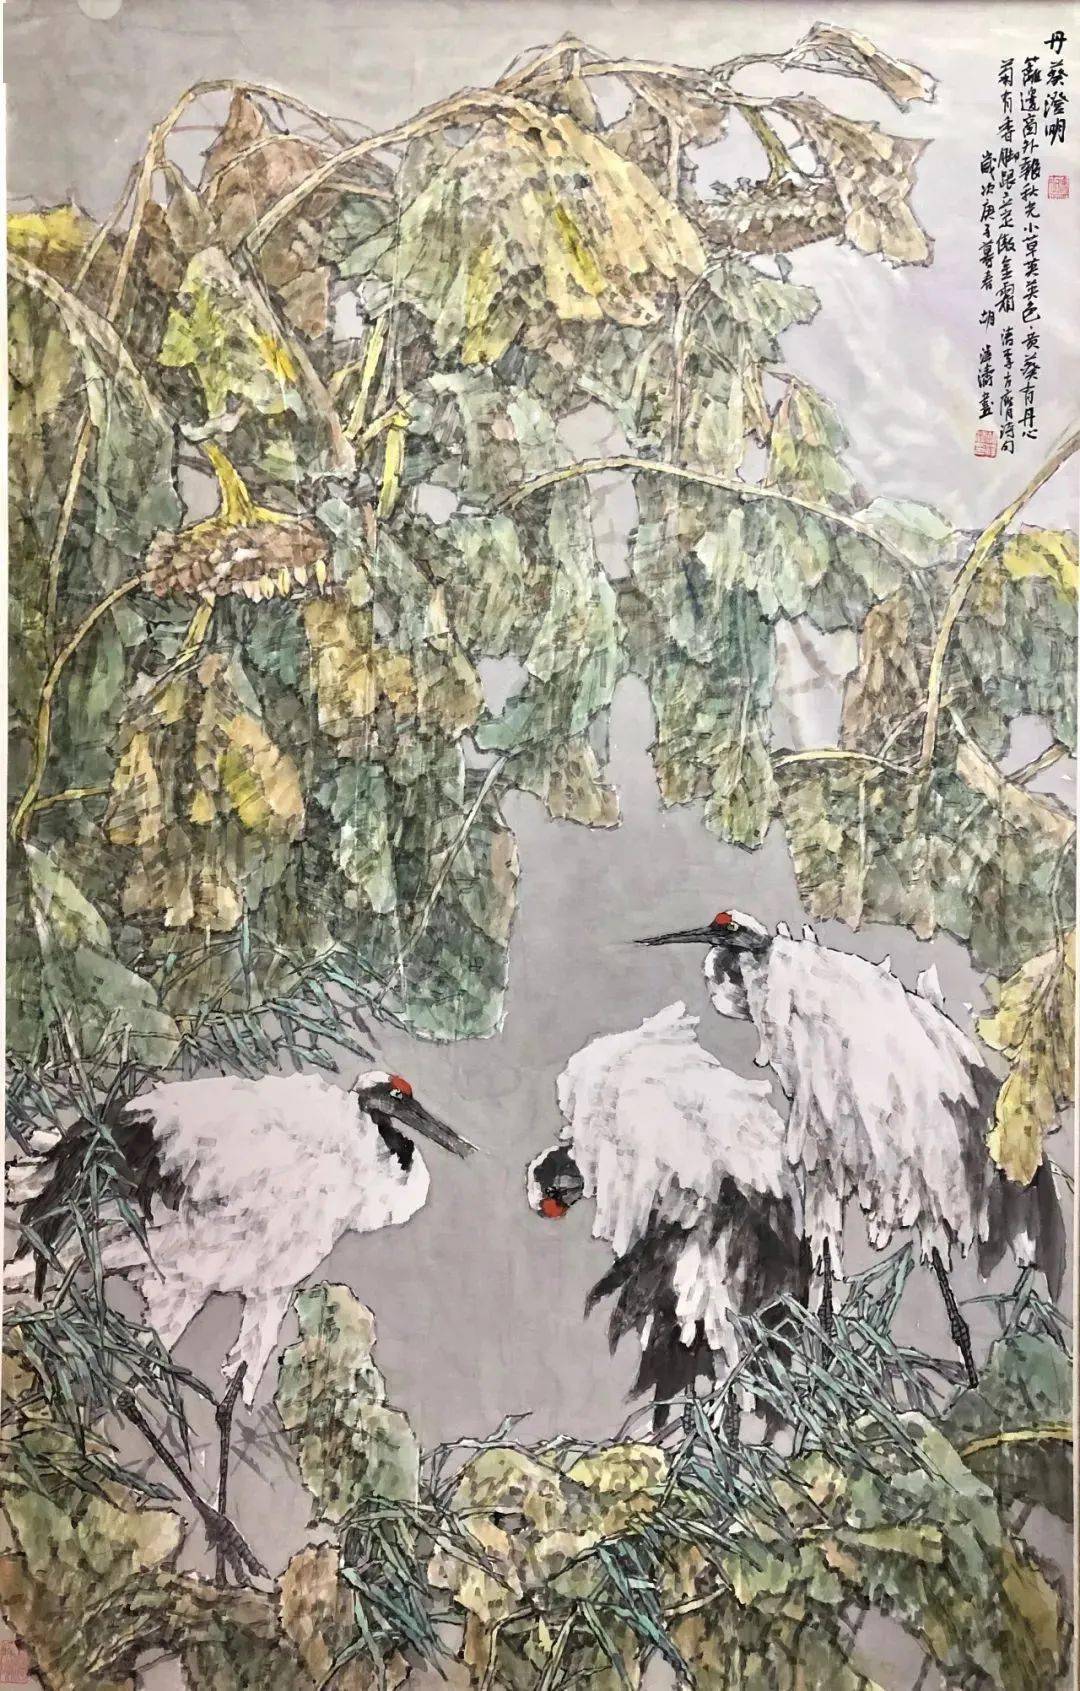 灵韵190cm×190cm十一届全国美展作品 2009年胡泽涛笔下的鹤是天上的